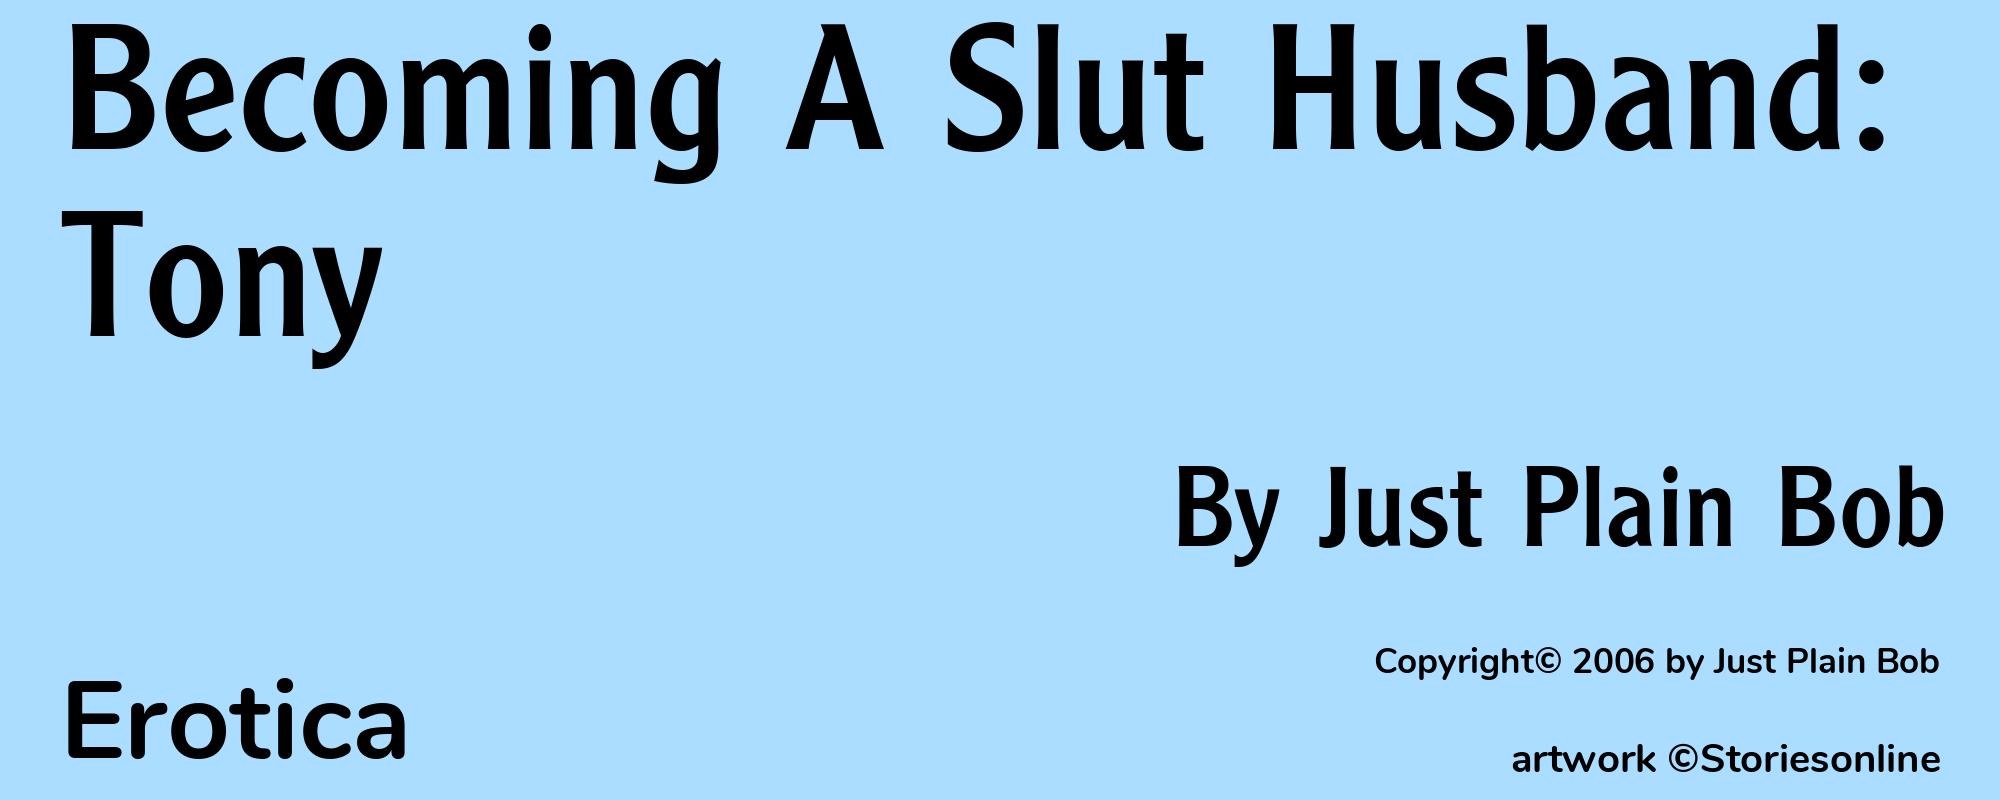 Becoming A Slut Husband: Tony - Cover